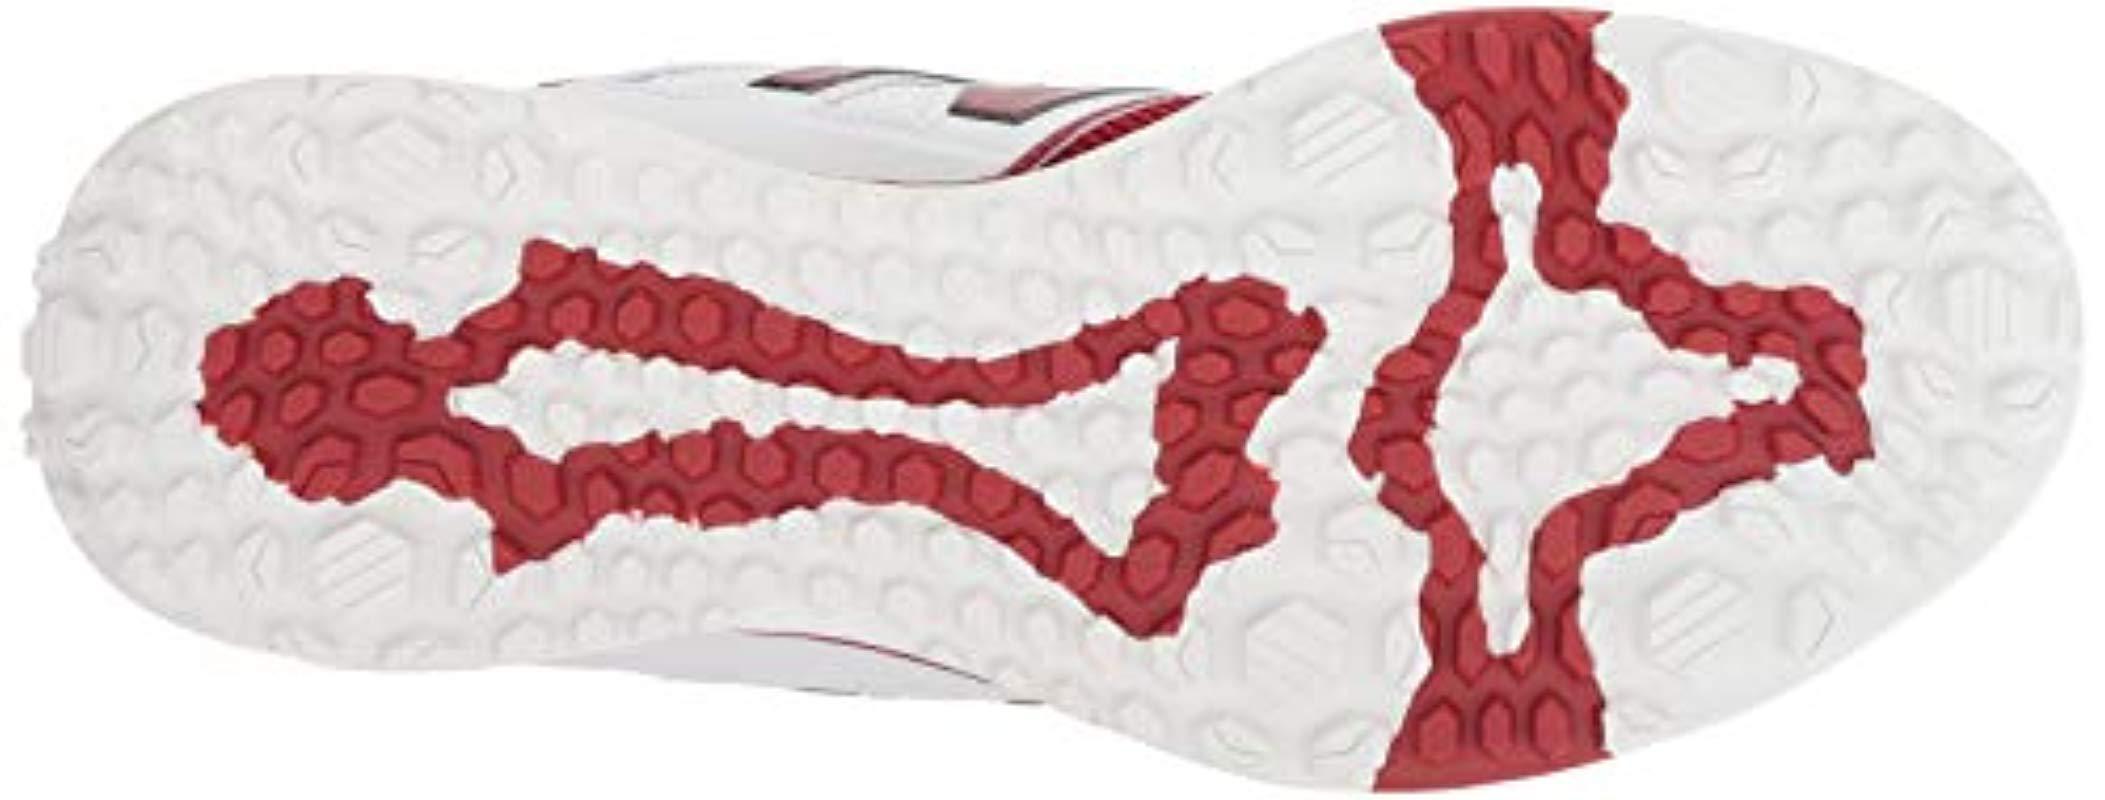 New Balance 3000 V4 Turf Baseball Shoe in Red for Men | Lyst